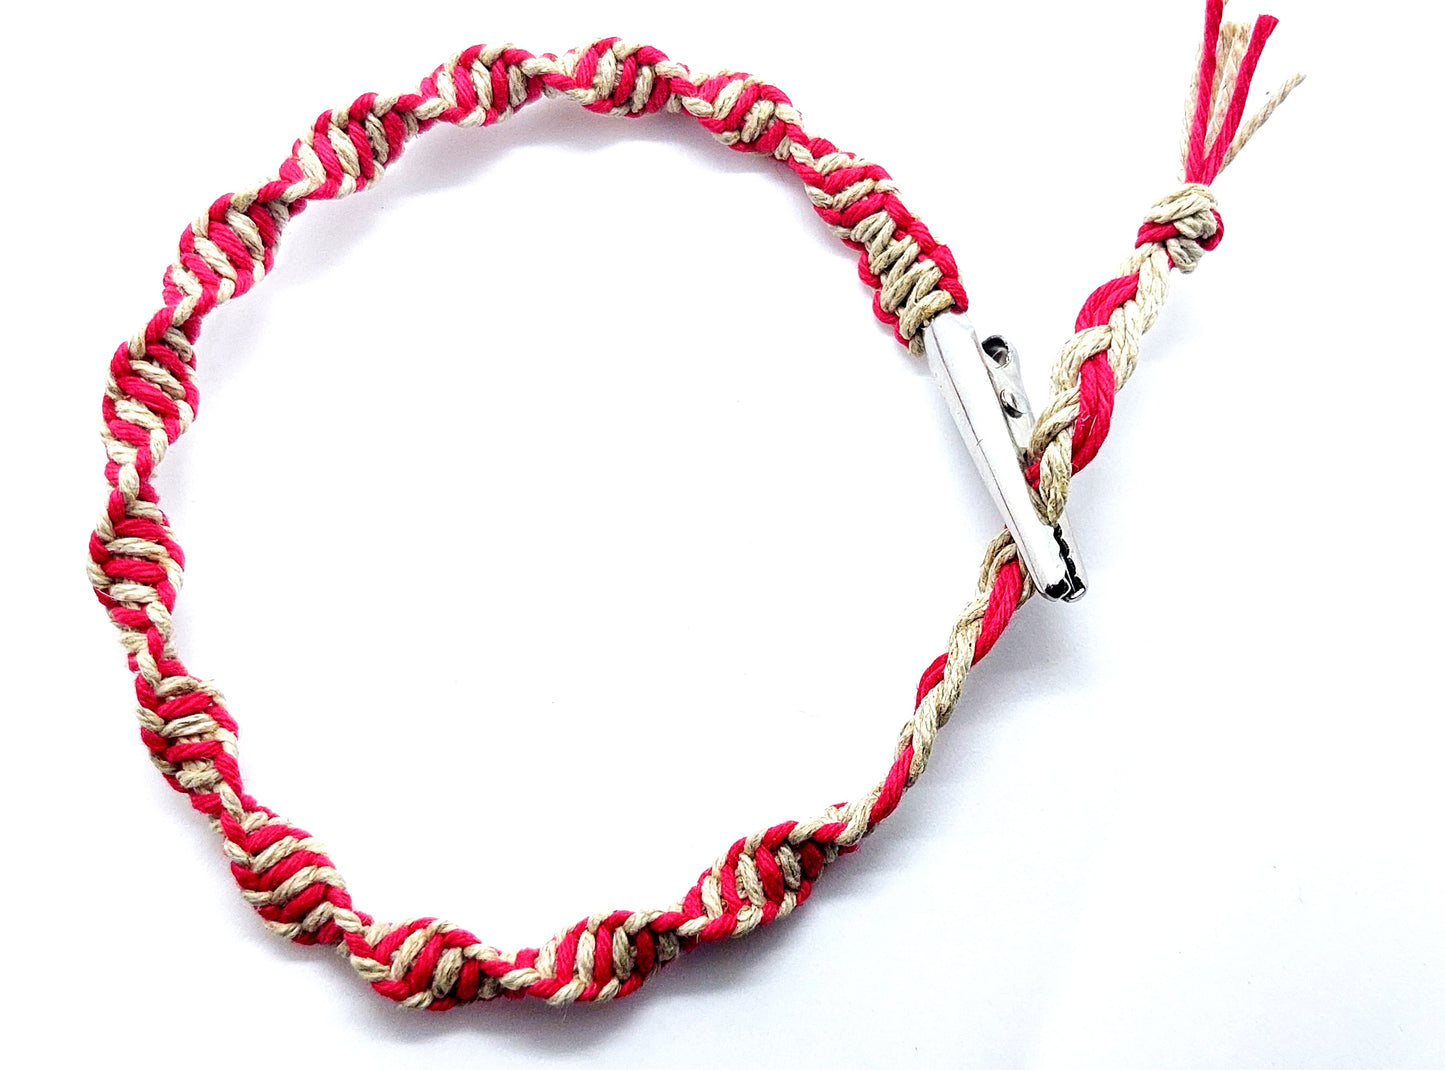 Twisted Spiral Hempnotic Red and Natural Hemp Adjustable Anklet or Bracelet